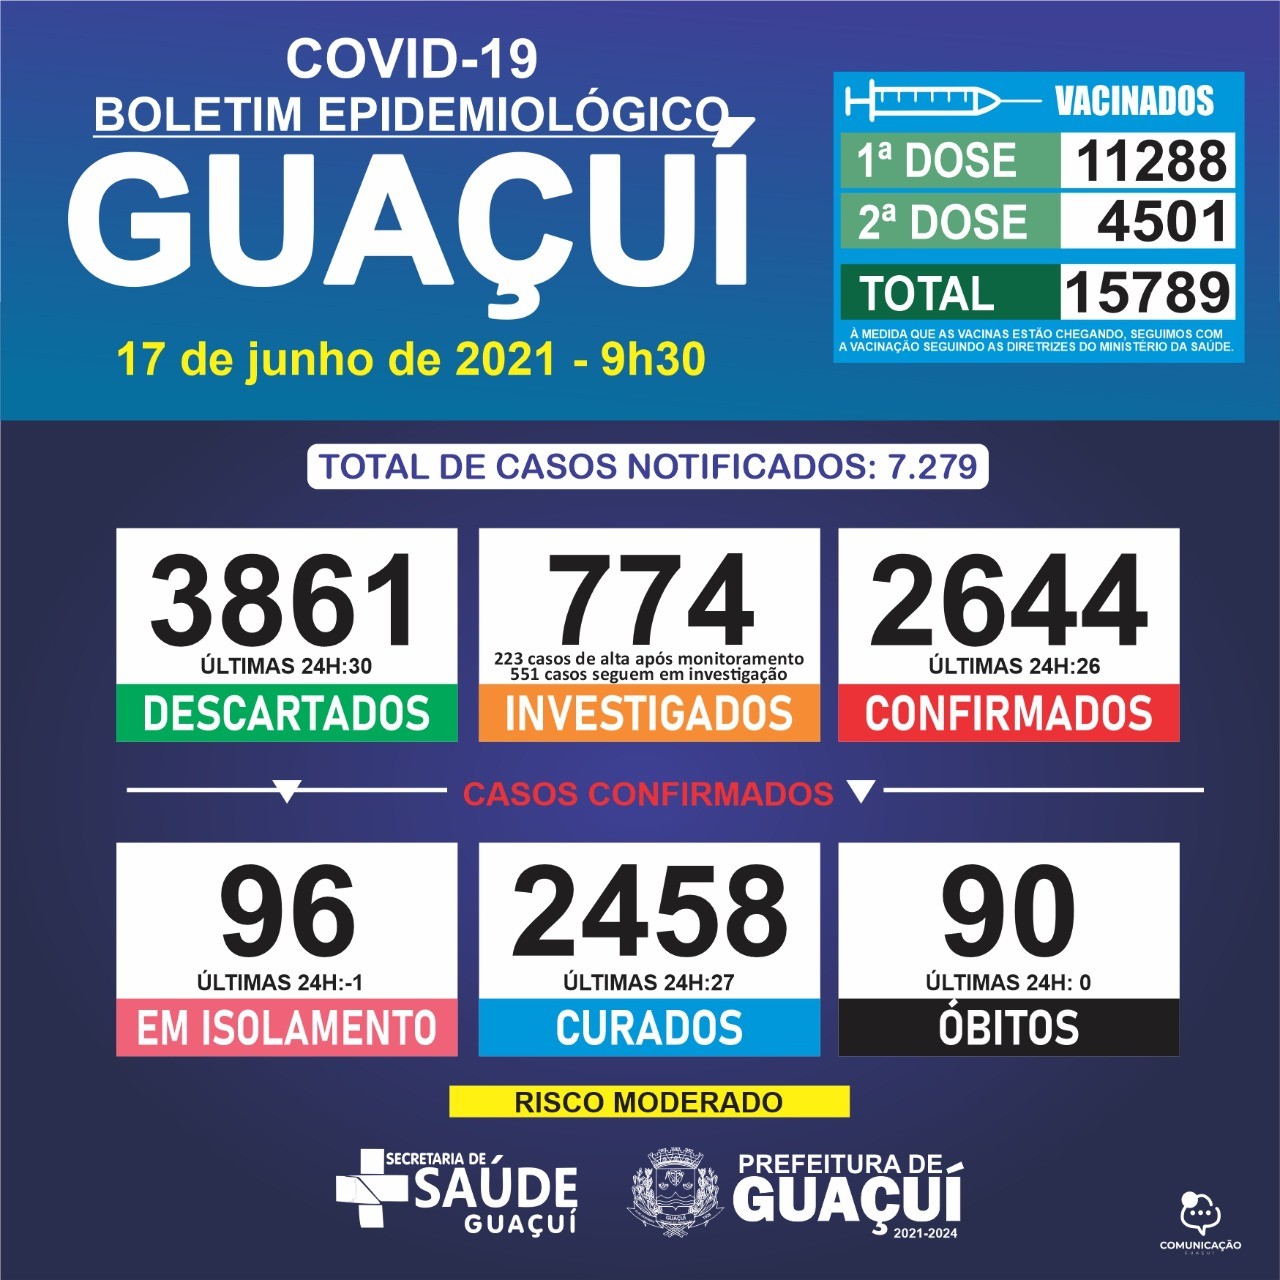 Boletim Epidemiológico 17/06/21: Guaçuí registra 26 casos confirmados e 27 curados nas últimas 24 horas